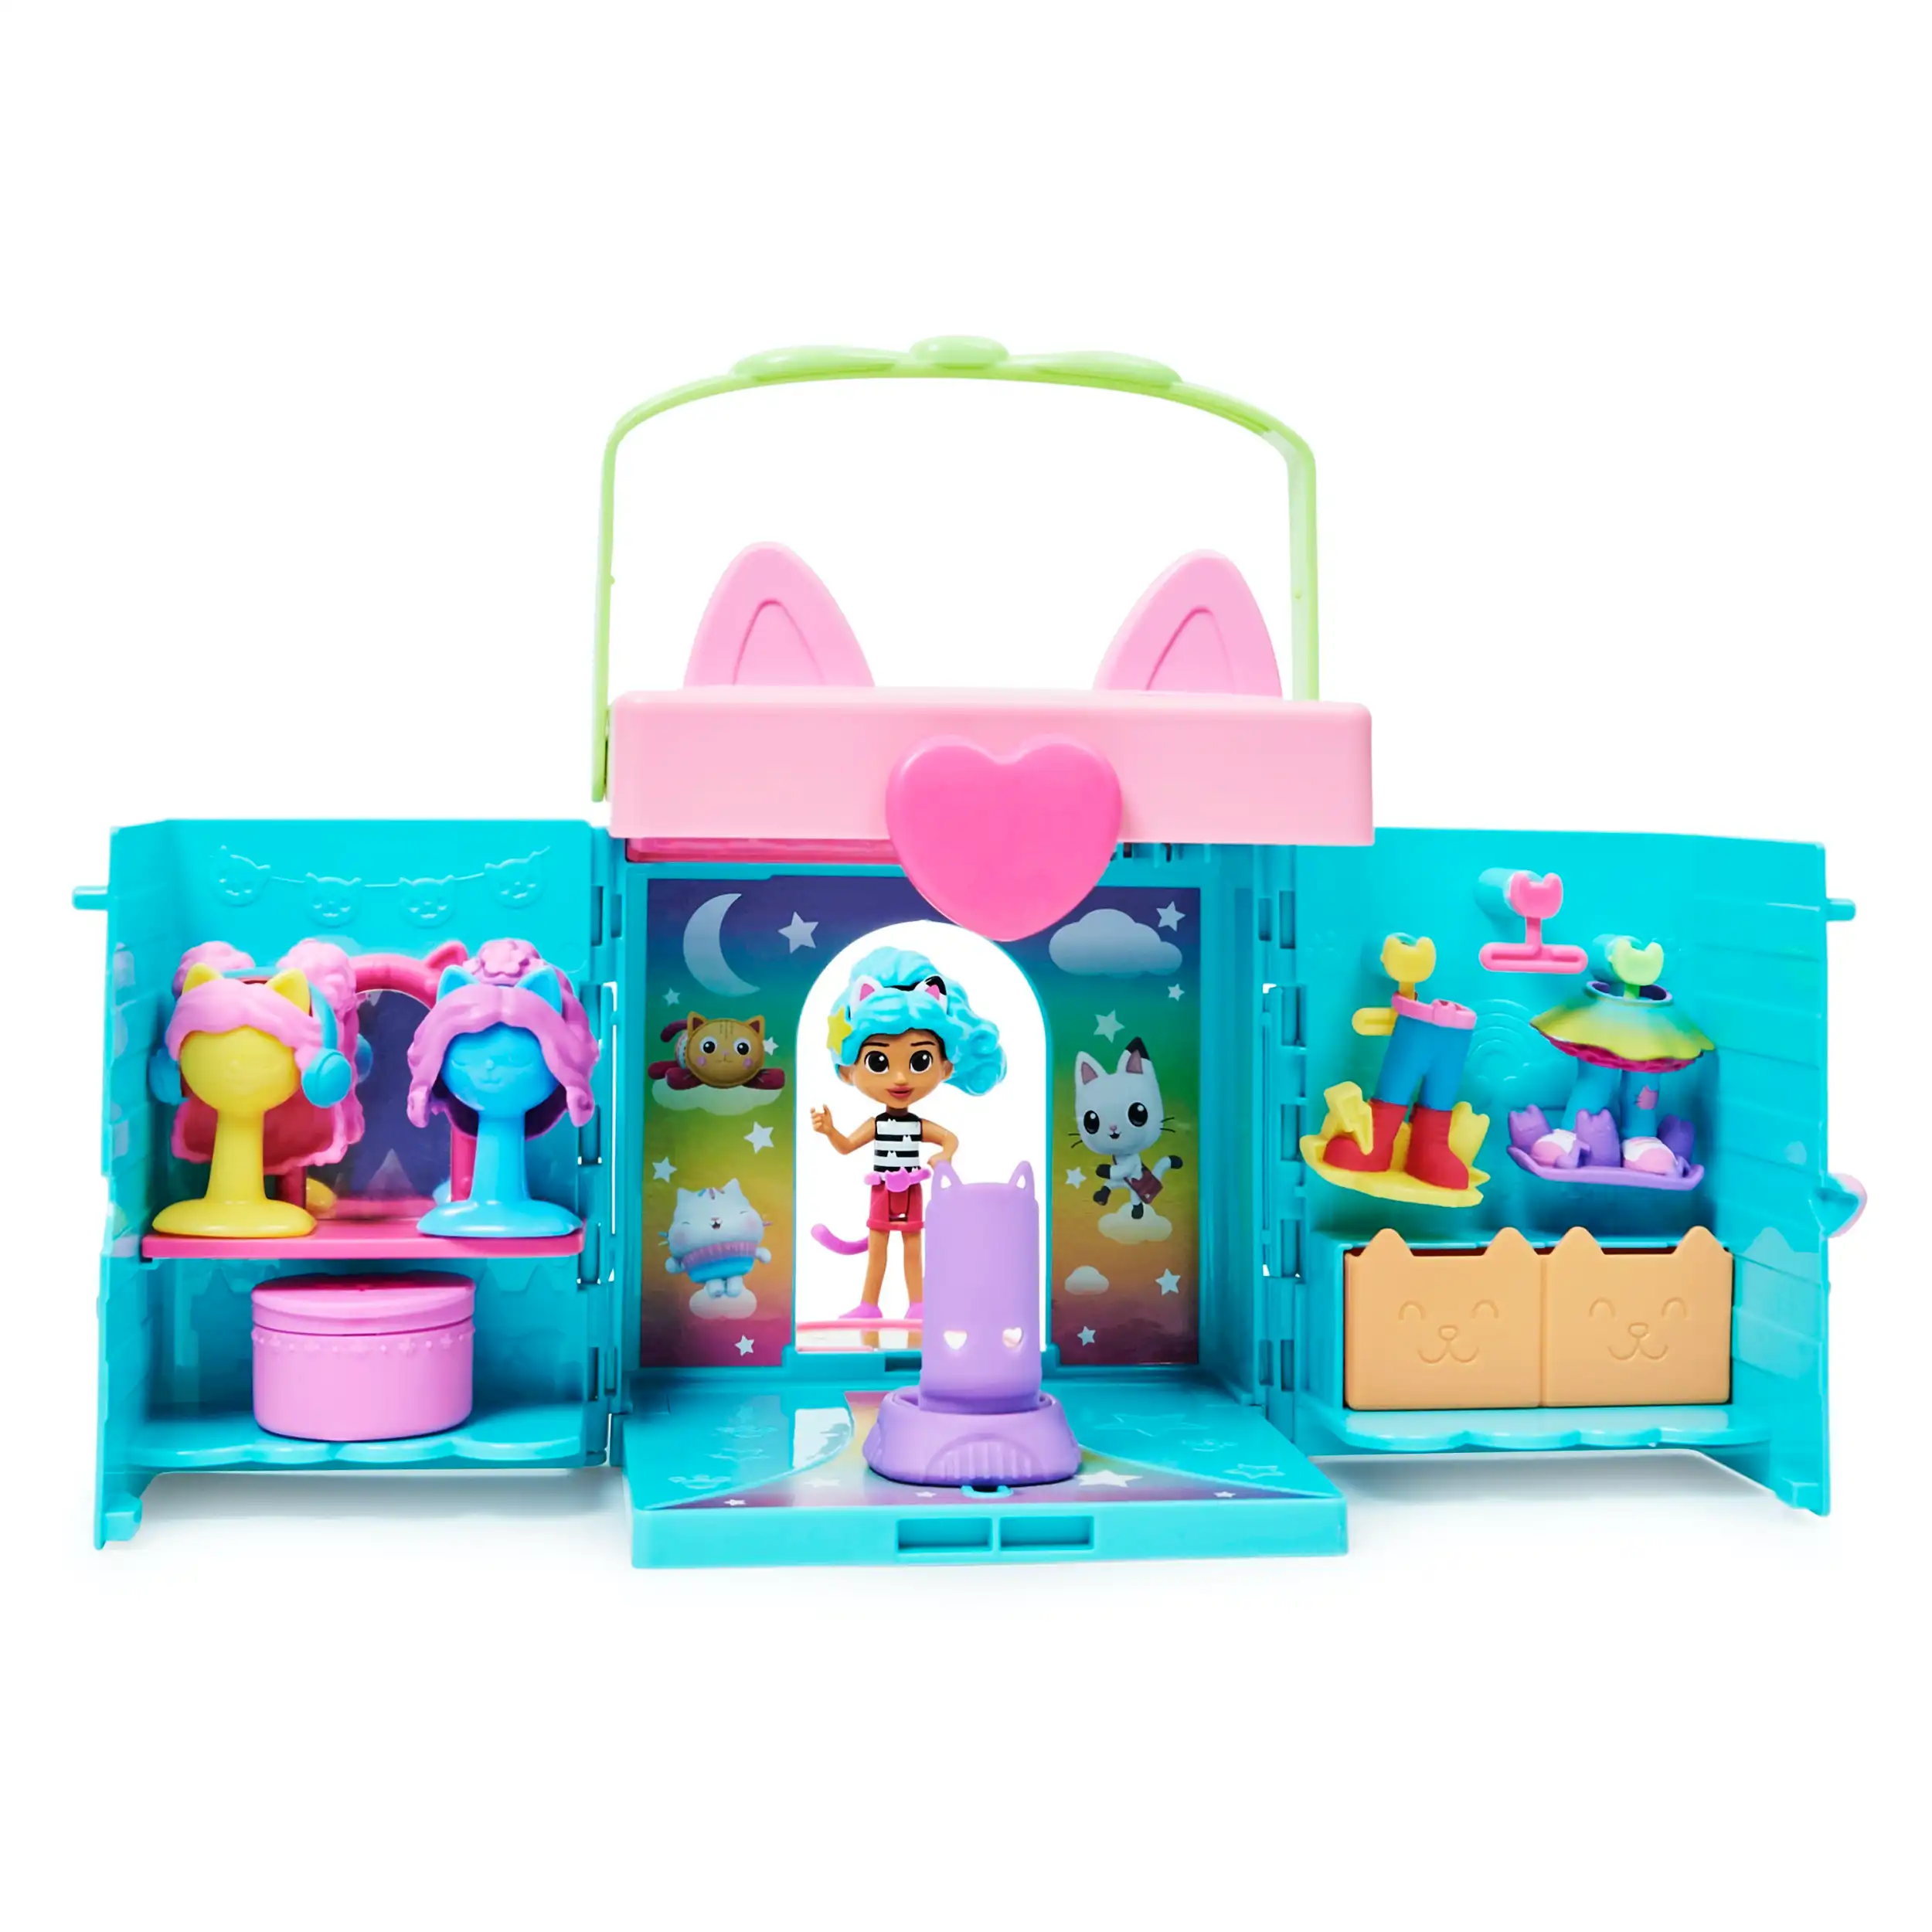 Gabby’s Dollhouse, Gabby and Friends Figure Set with Rainbow Doll